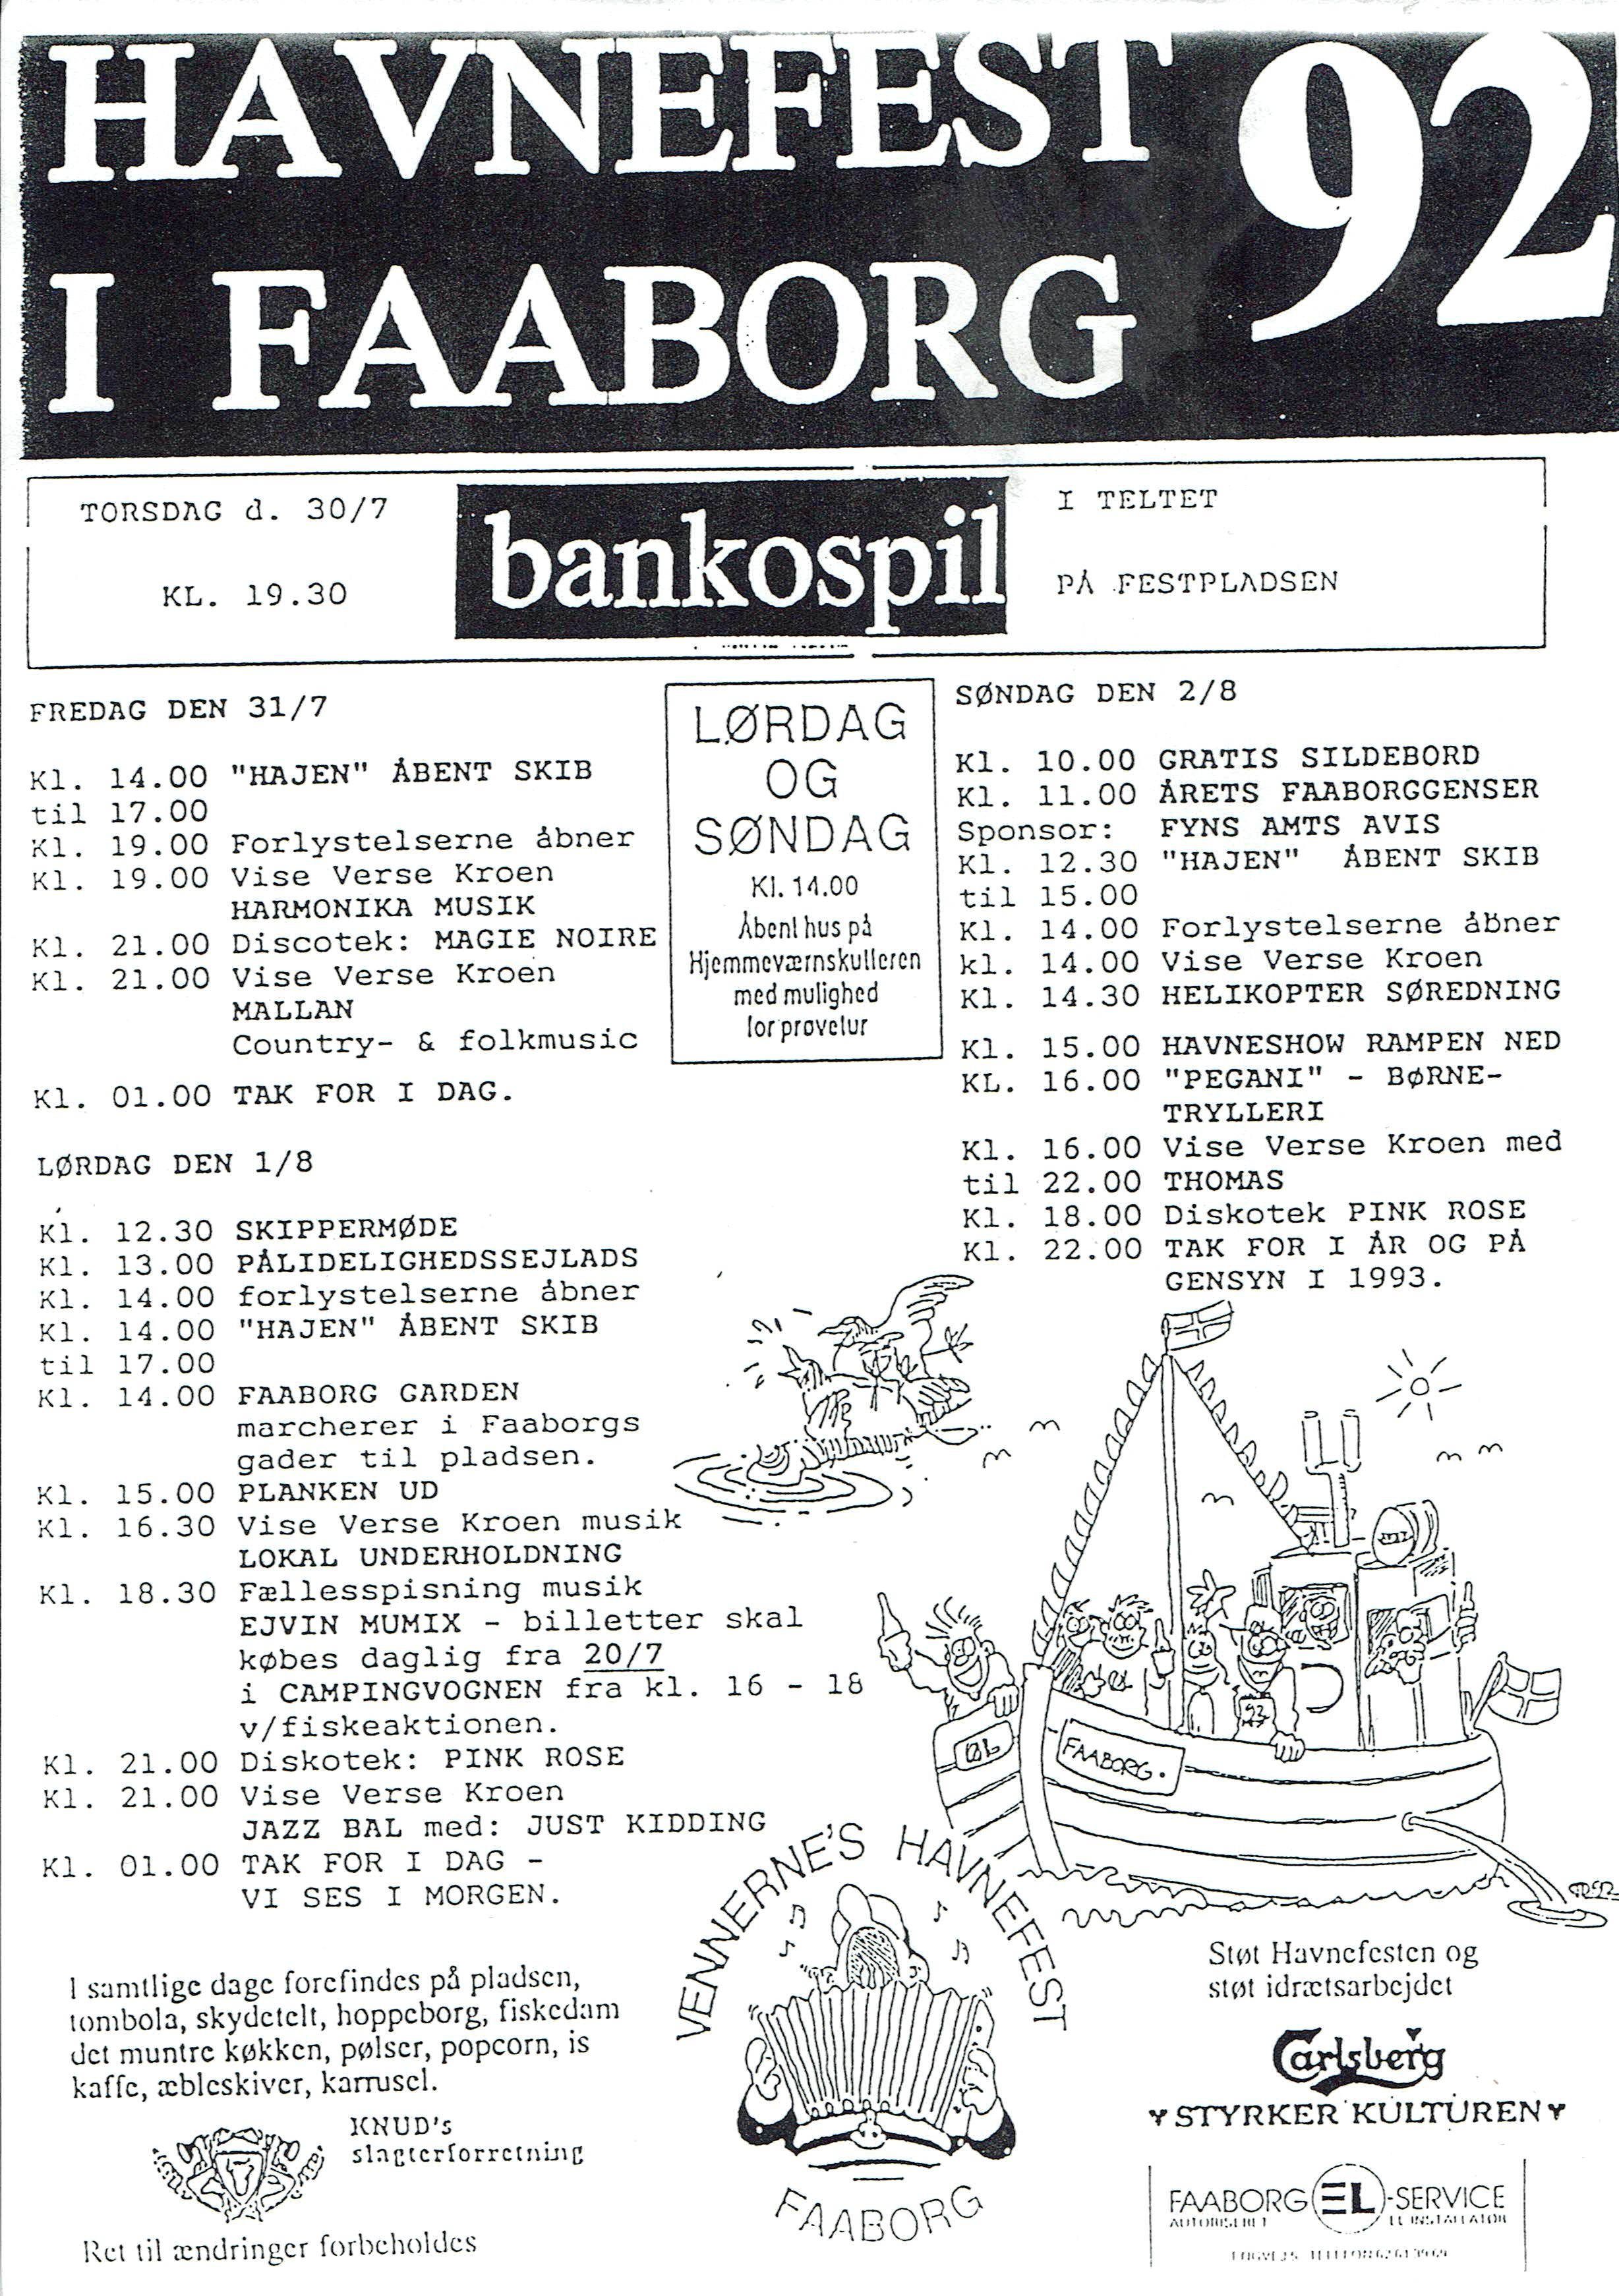 Havnefest 1992